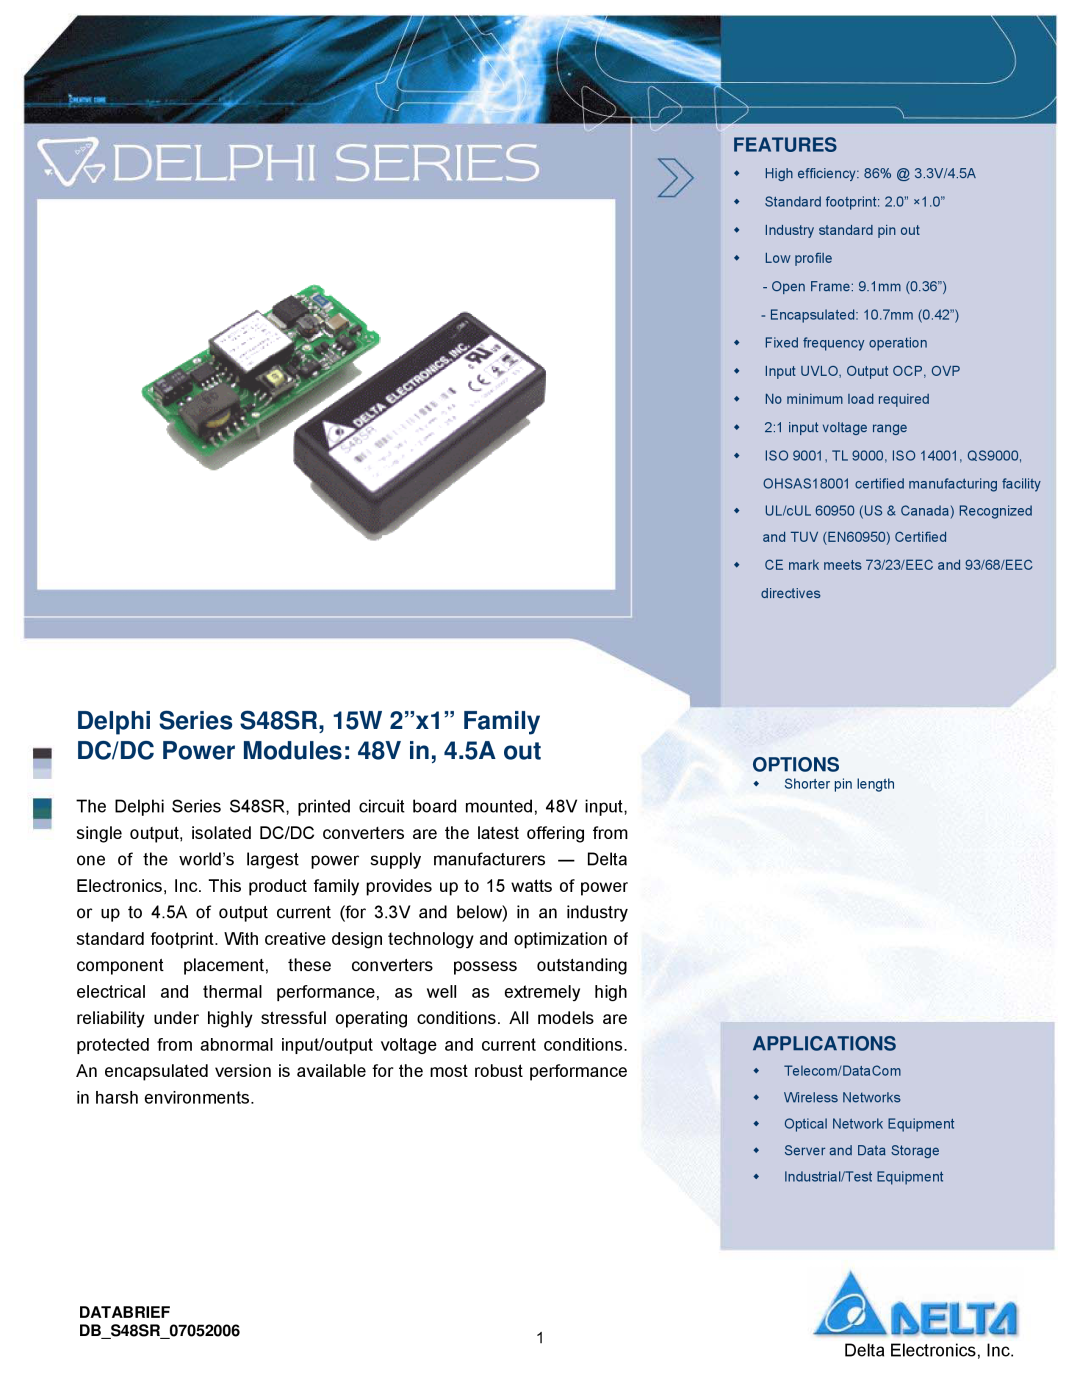 Delta Electronics S48SR manual Features, Options, Applications, Delta Electronics, Inc 